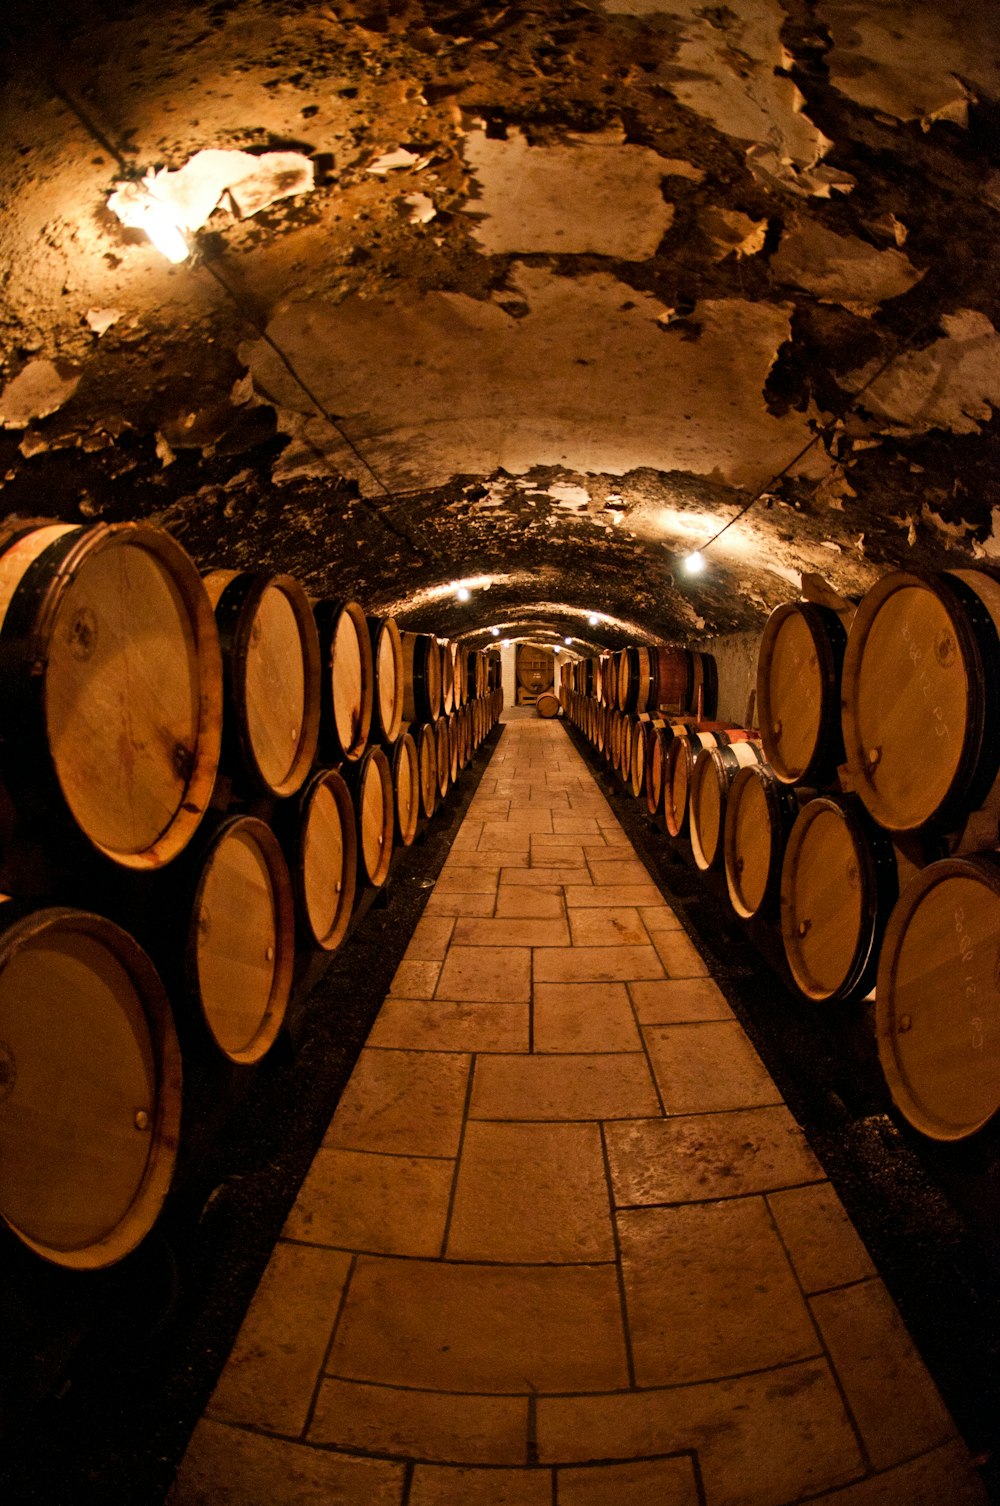 barrels of liquor in a basement